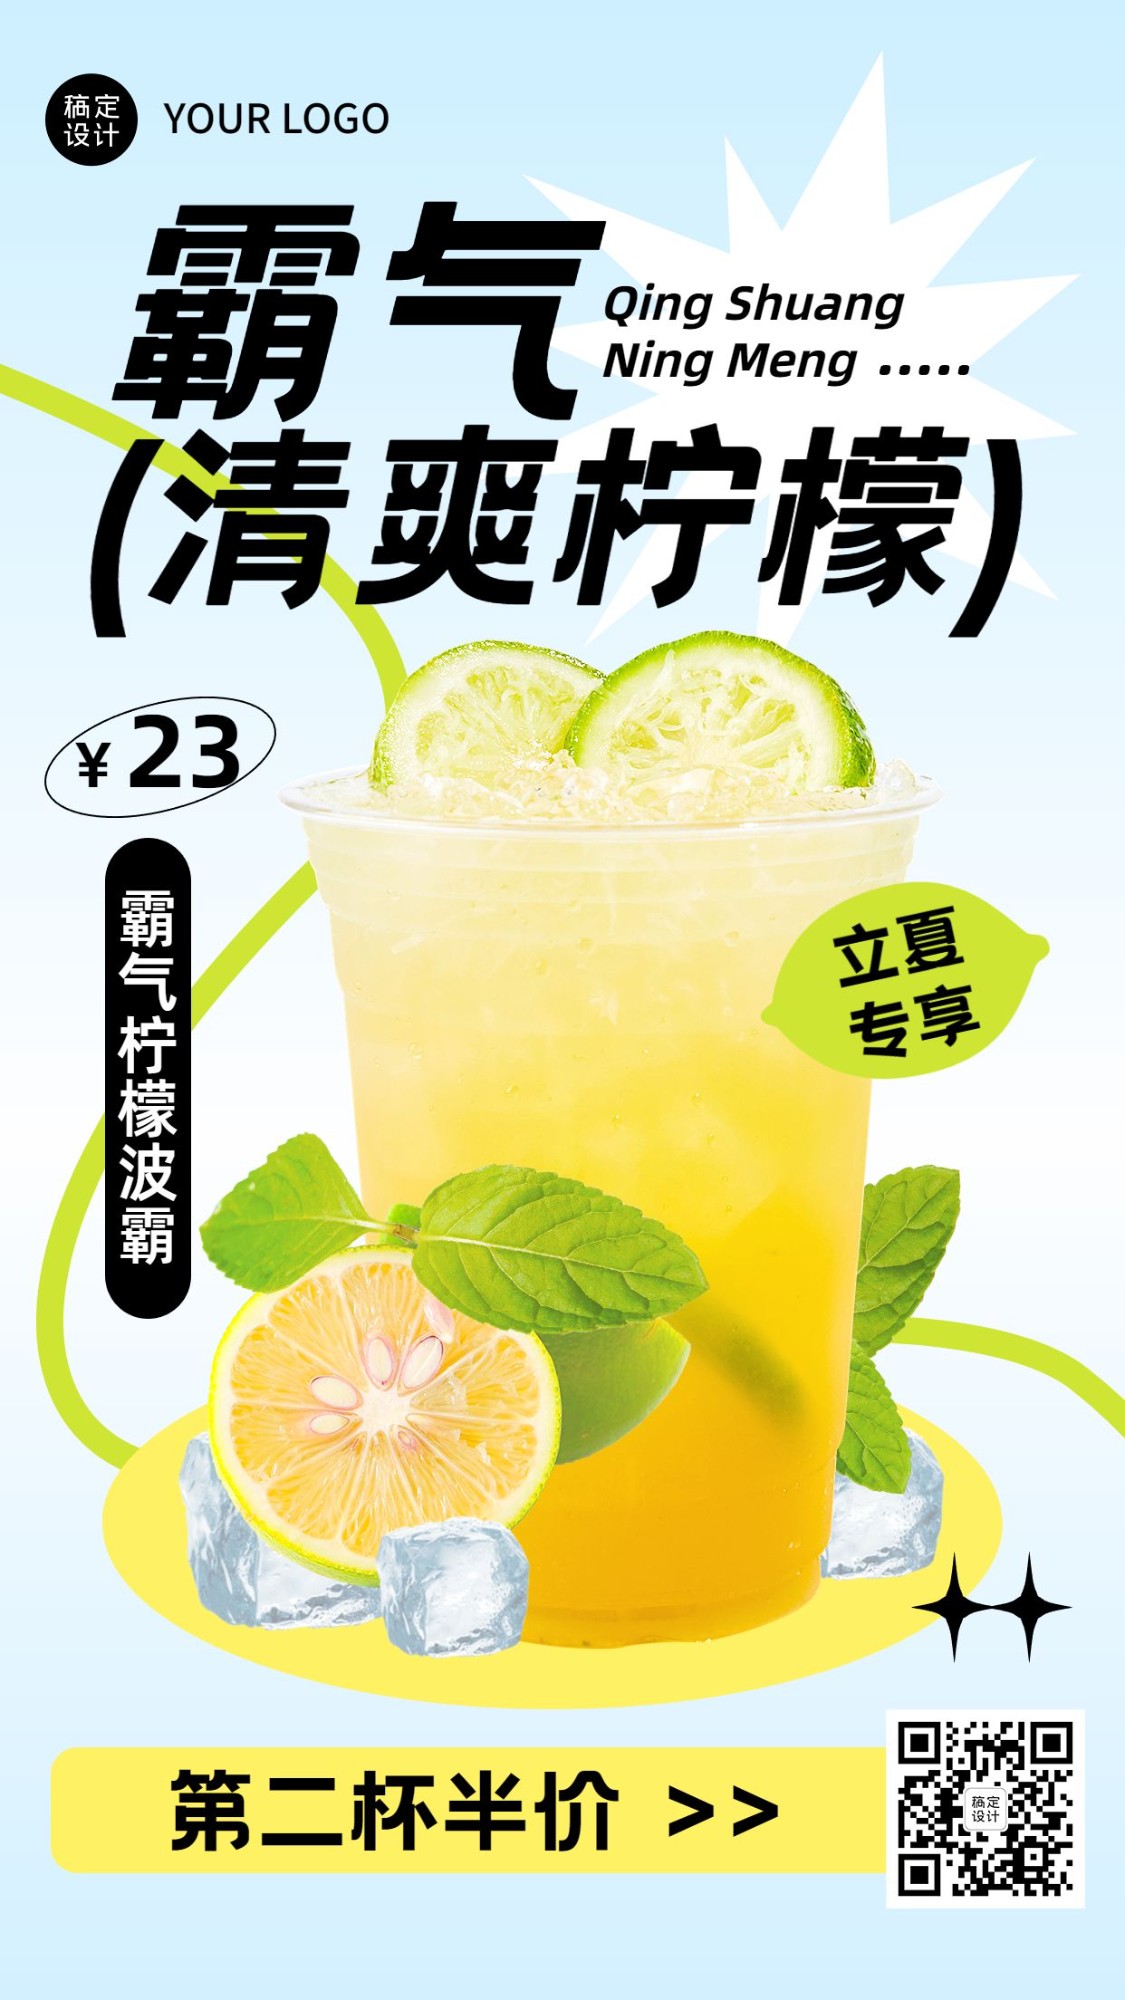 立夏餐饮美食奶茶饮品产品营销手机海报